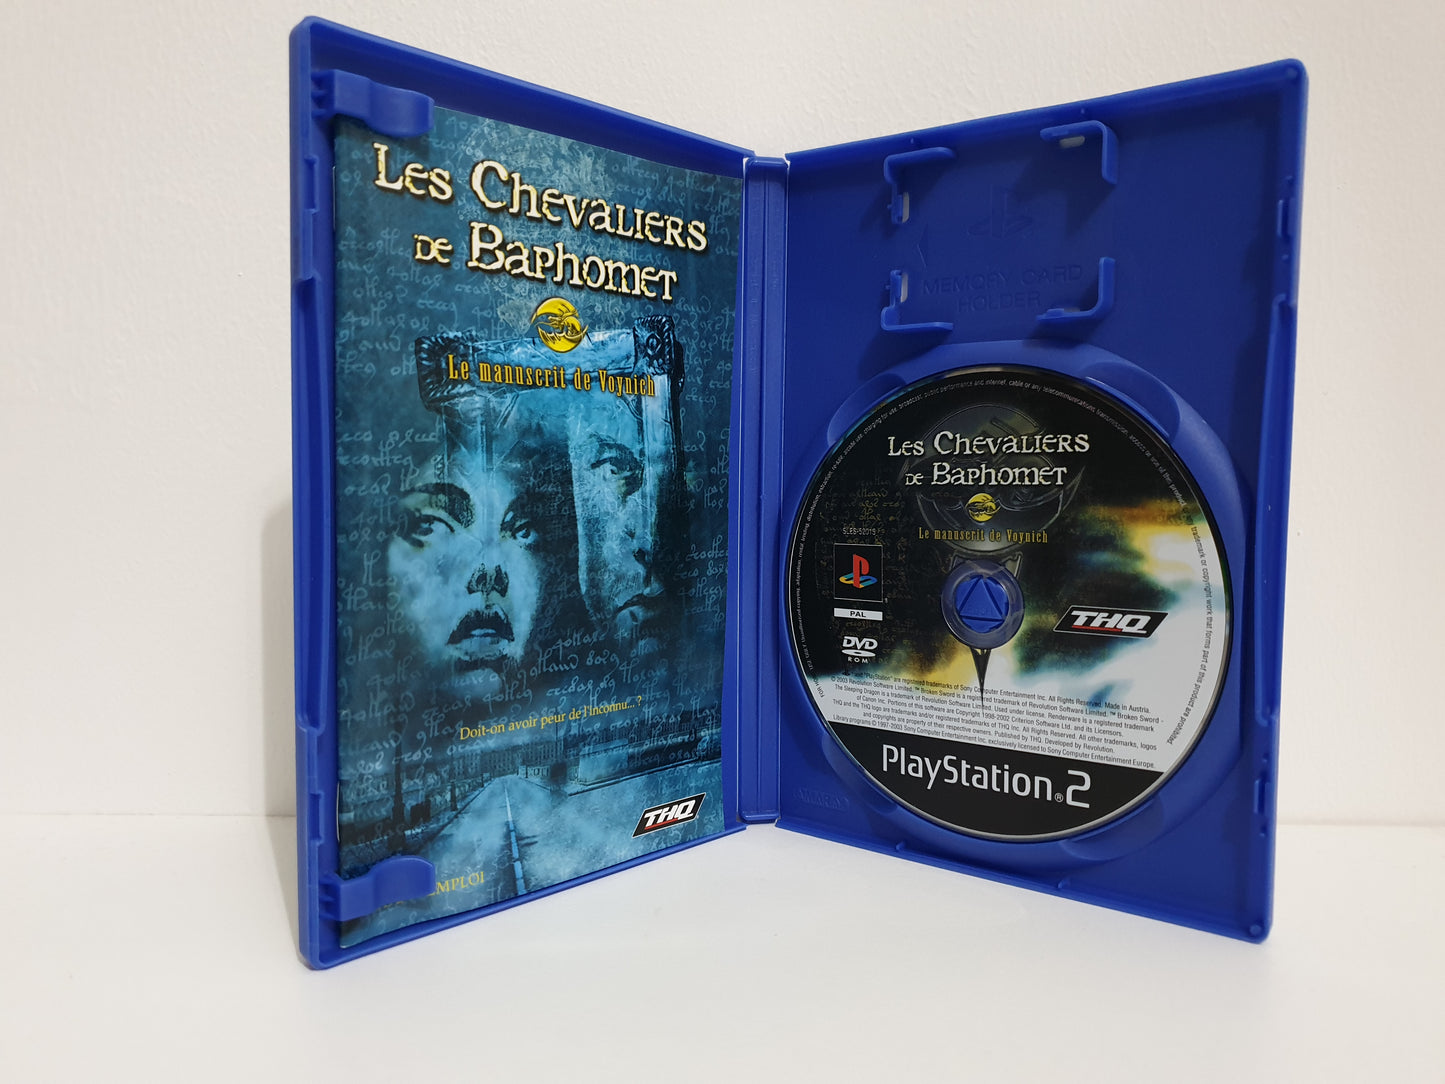 Les Chevaliers de Baphomet : Le Manuscrit de Voynich PS2 - Occasion excellent état